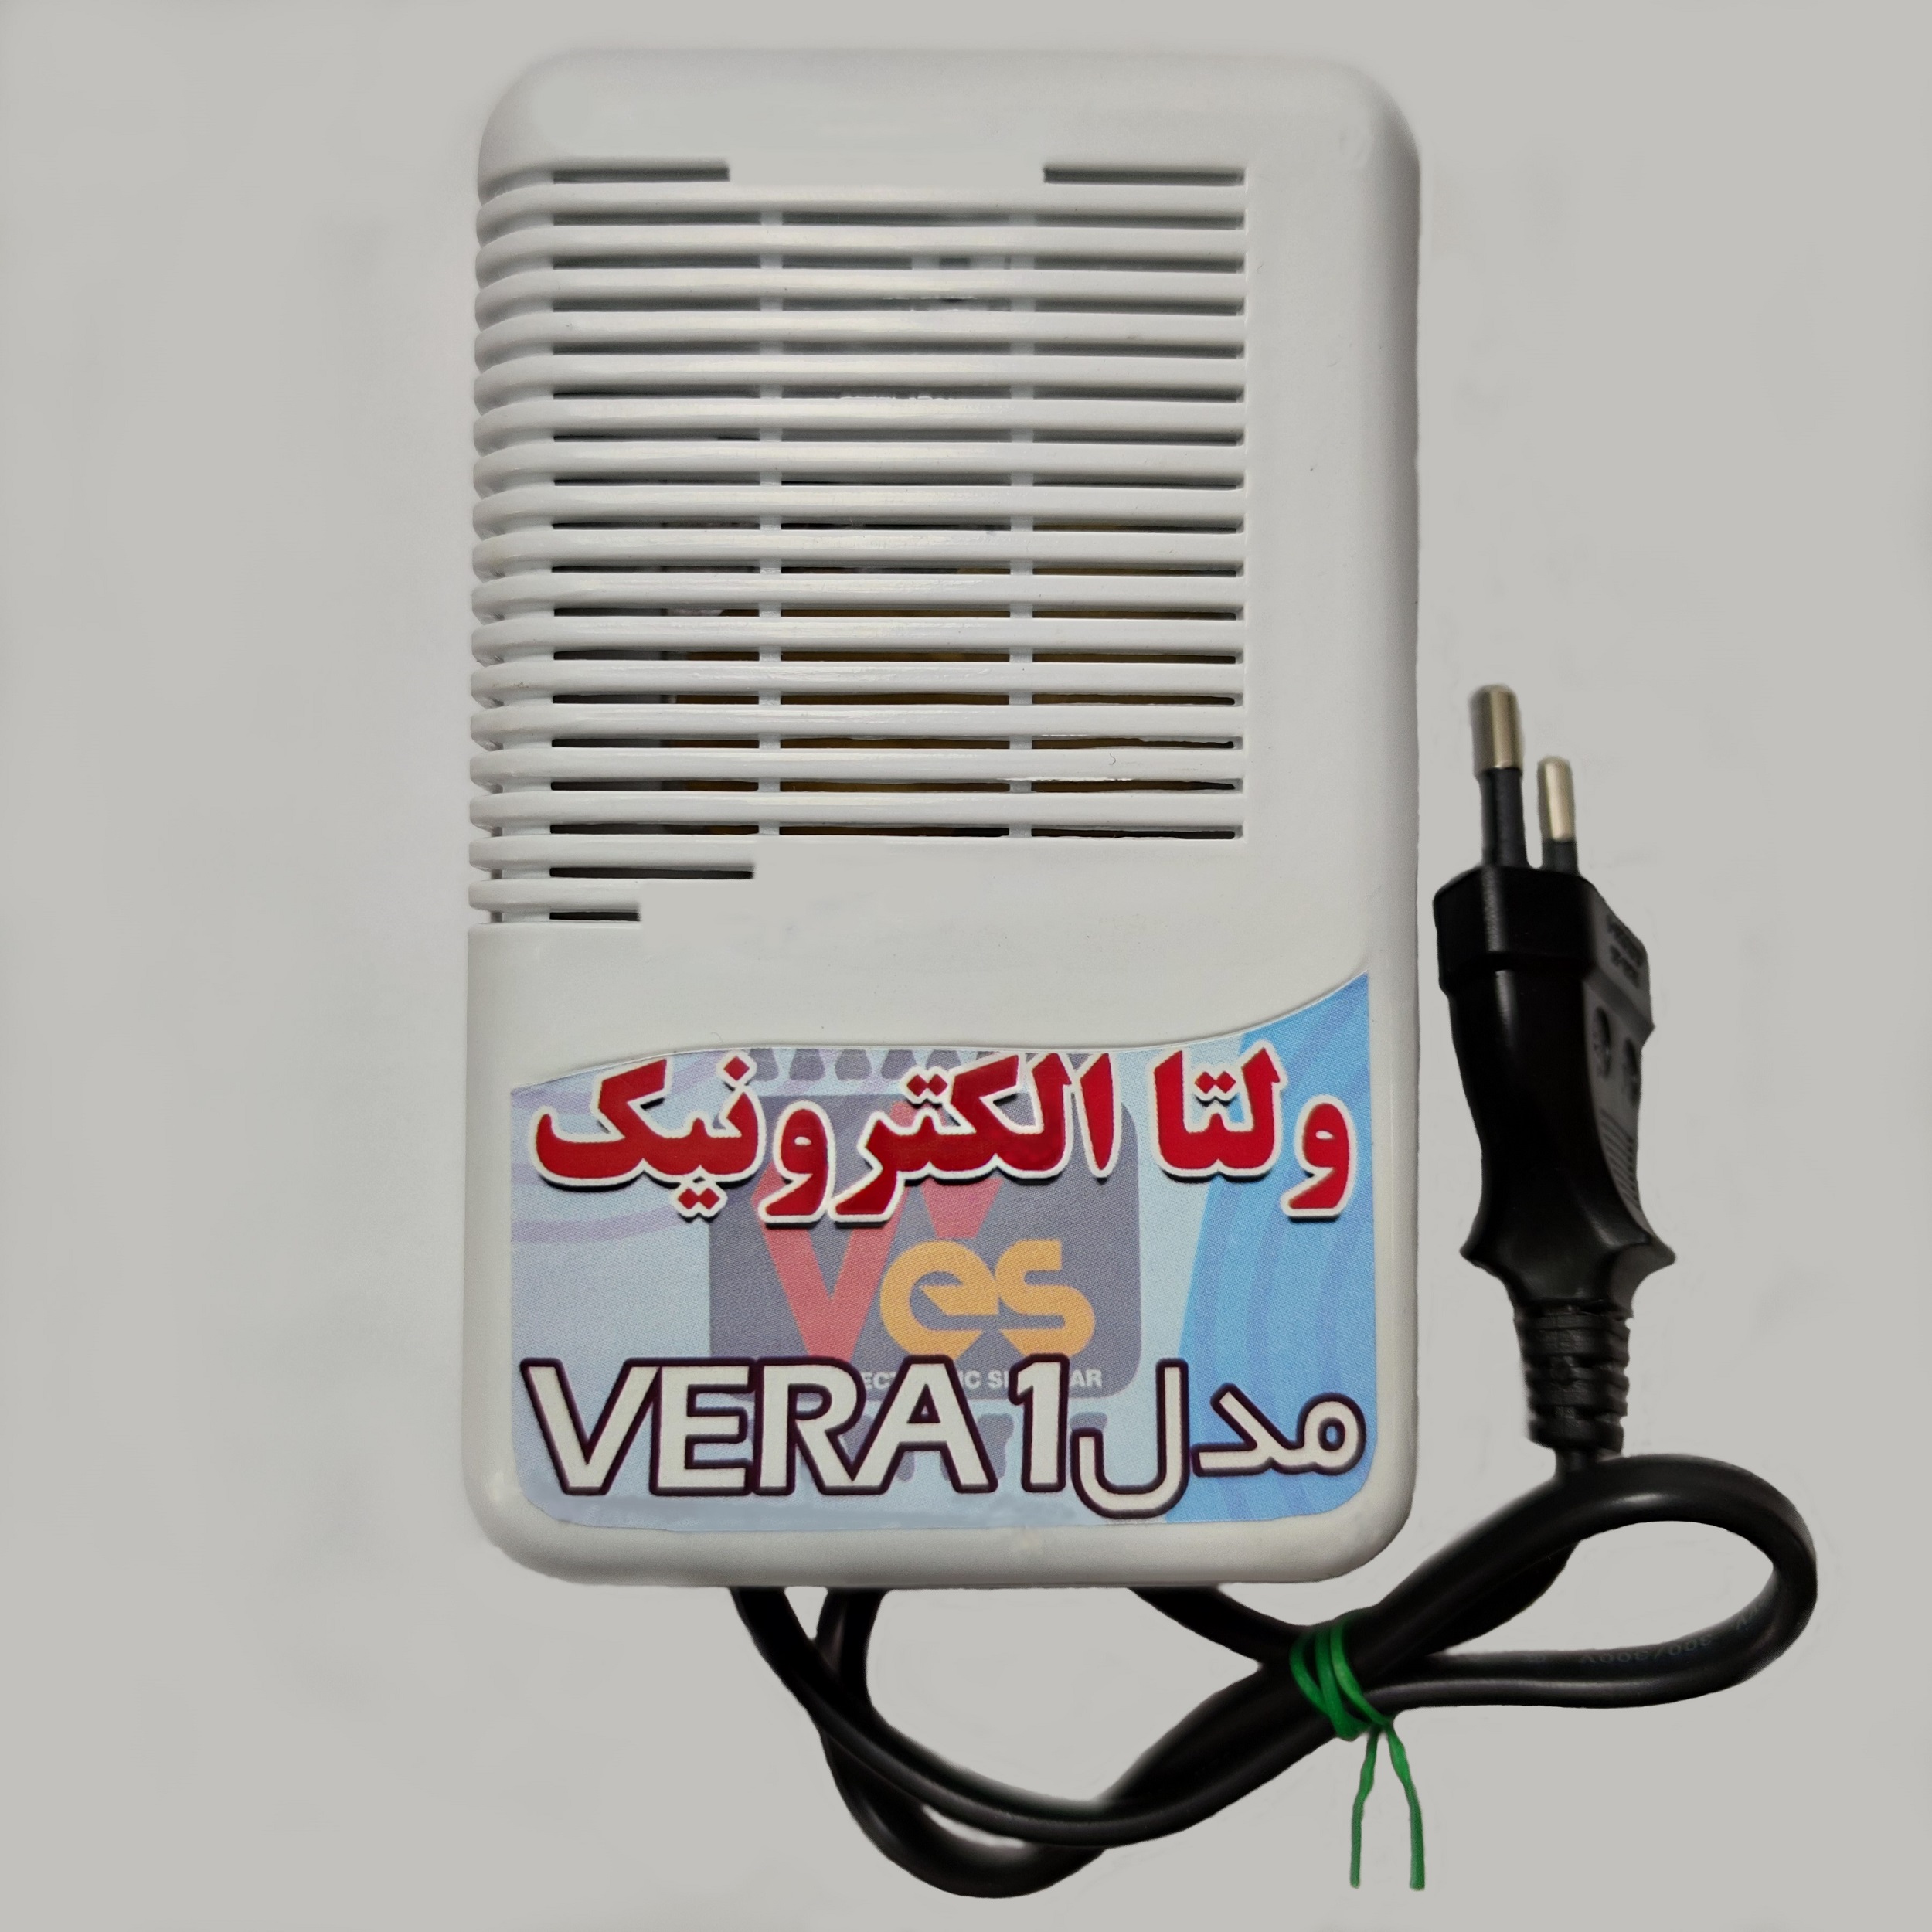 دستگاه دورکننده حشرات ولتا الکترونیک مدل vera_1